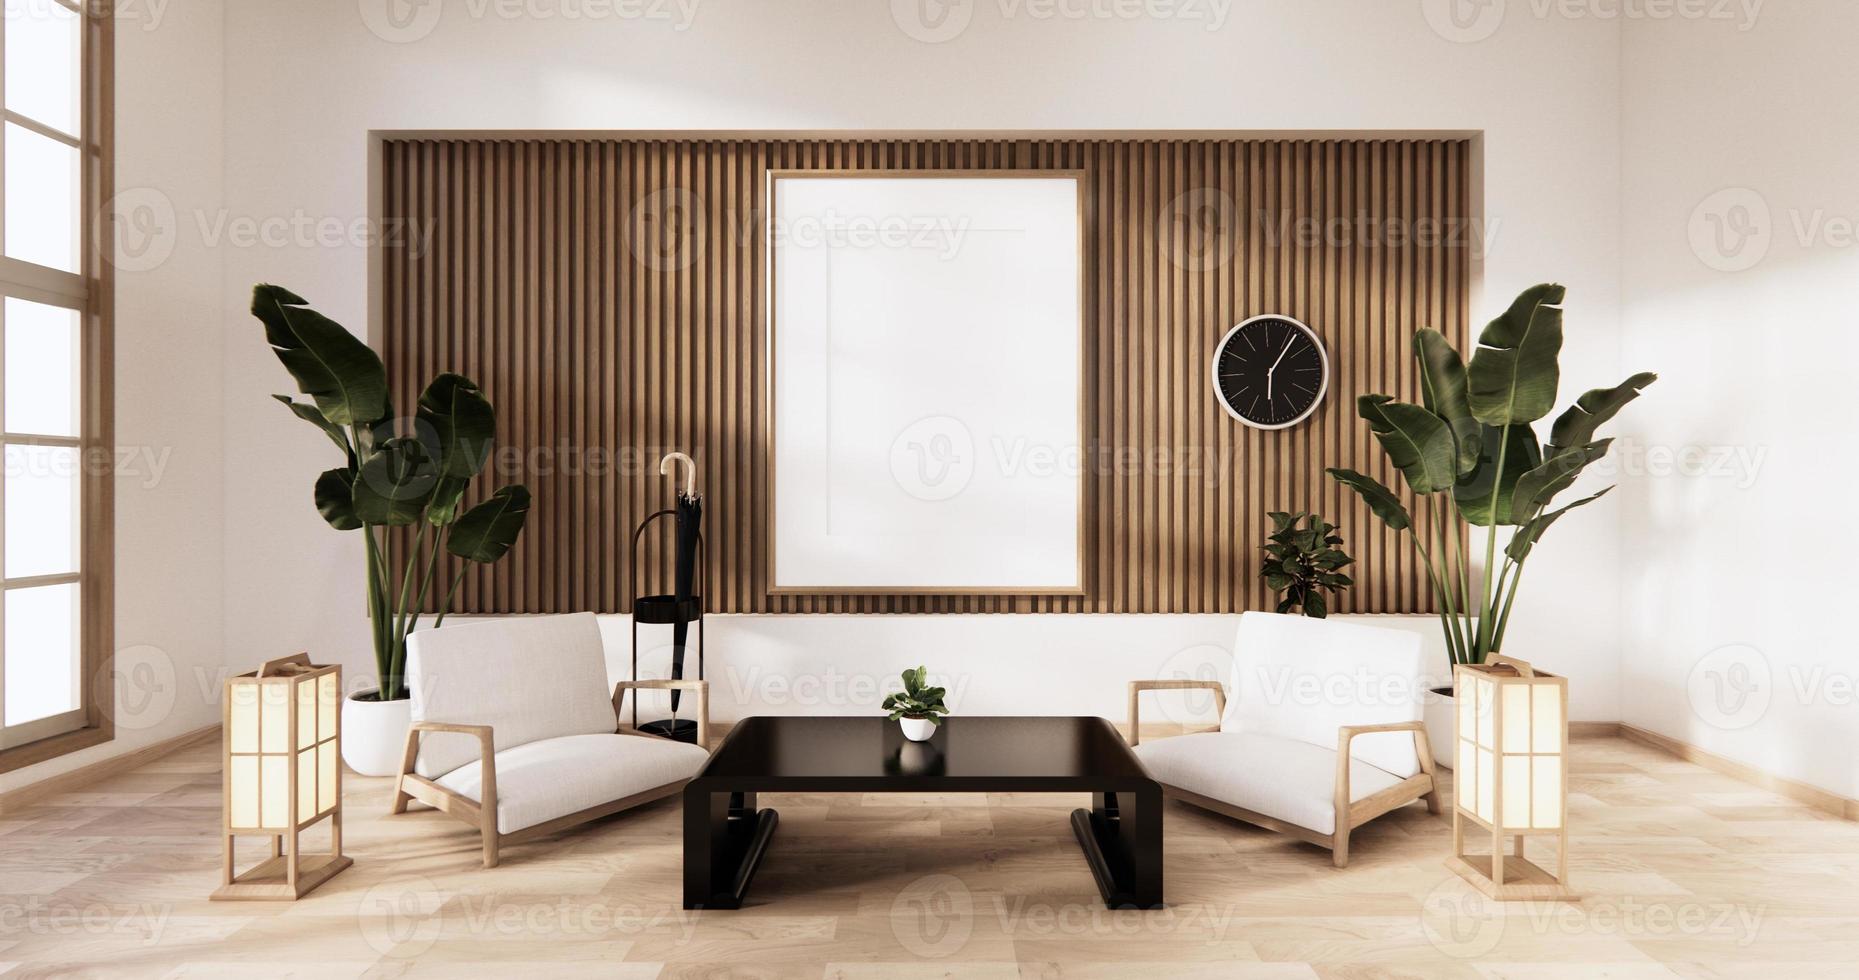 sala de estar tradicional em estilo japonês misturado com design moderno. Renderização 3D foto